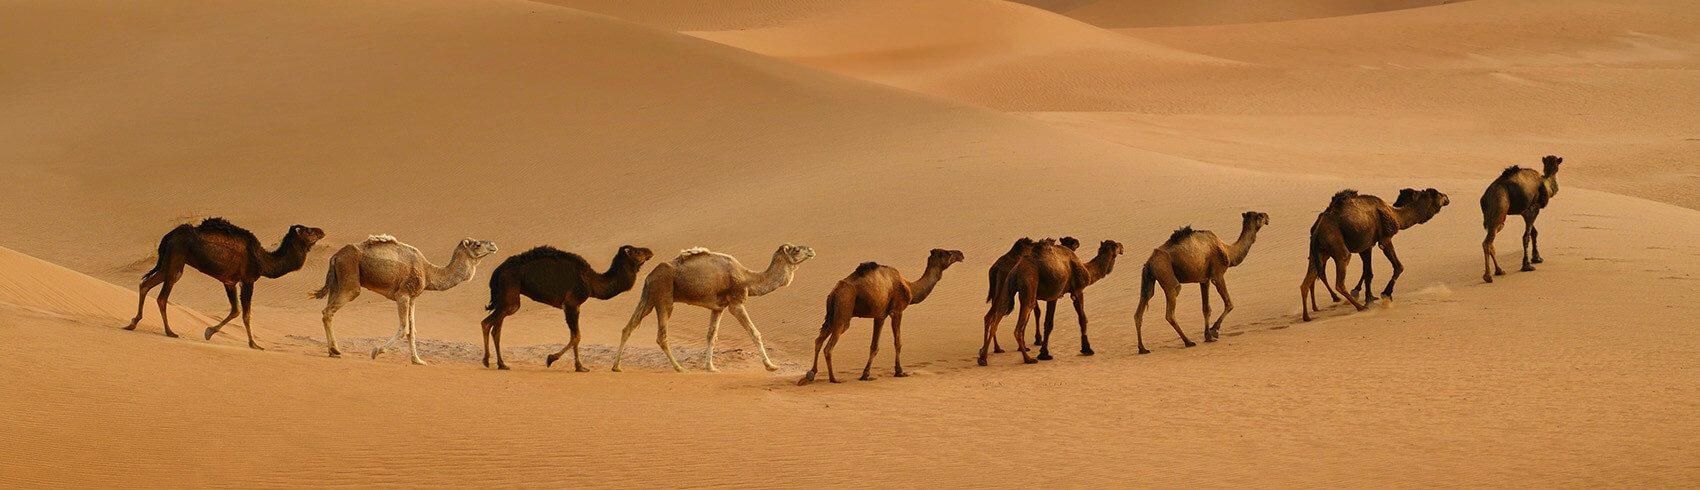 Desert Safari in Dubai